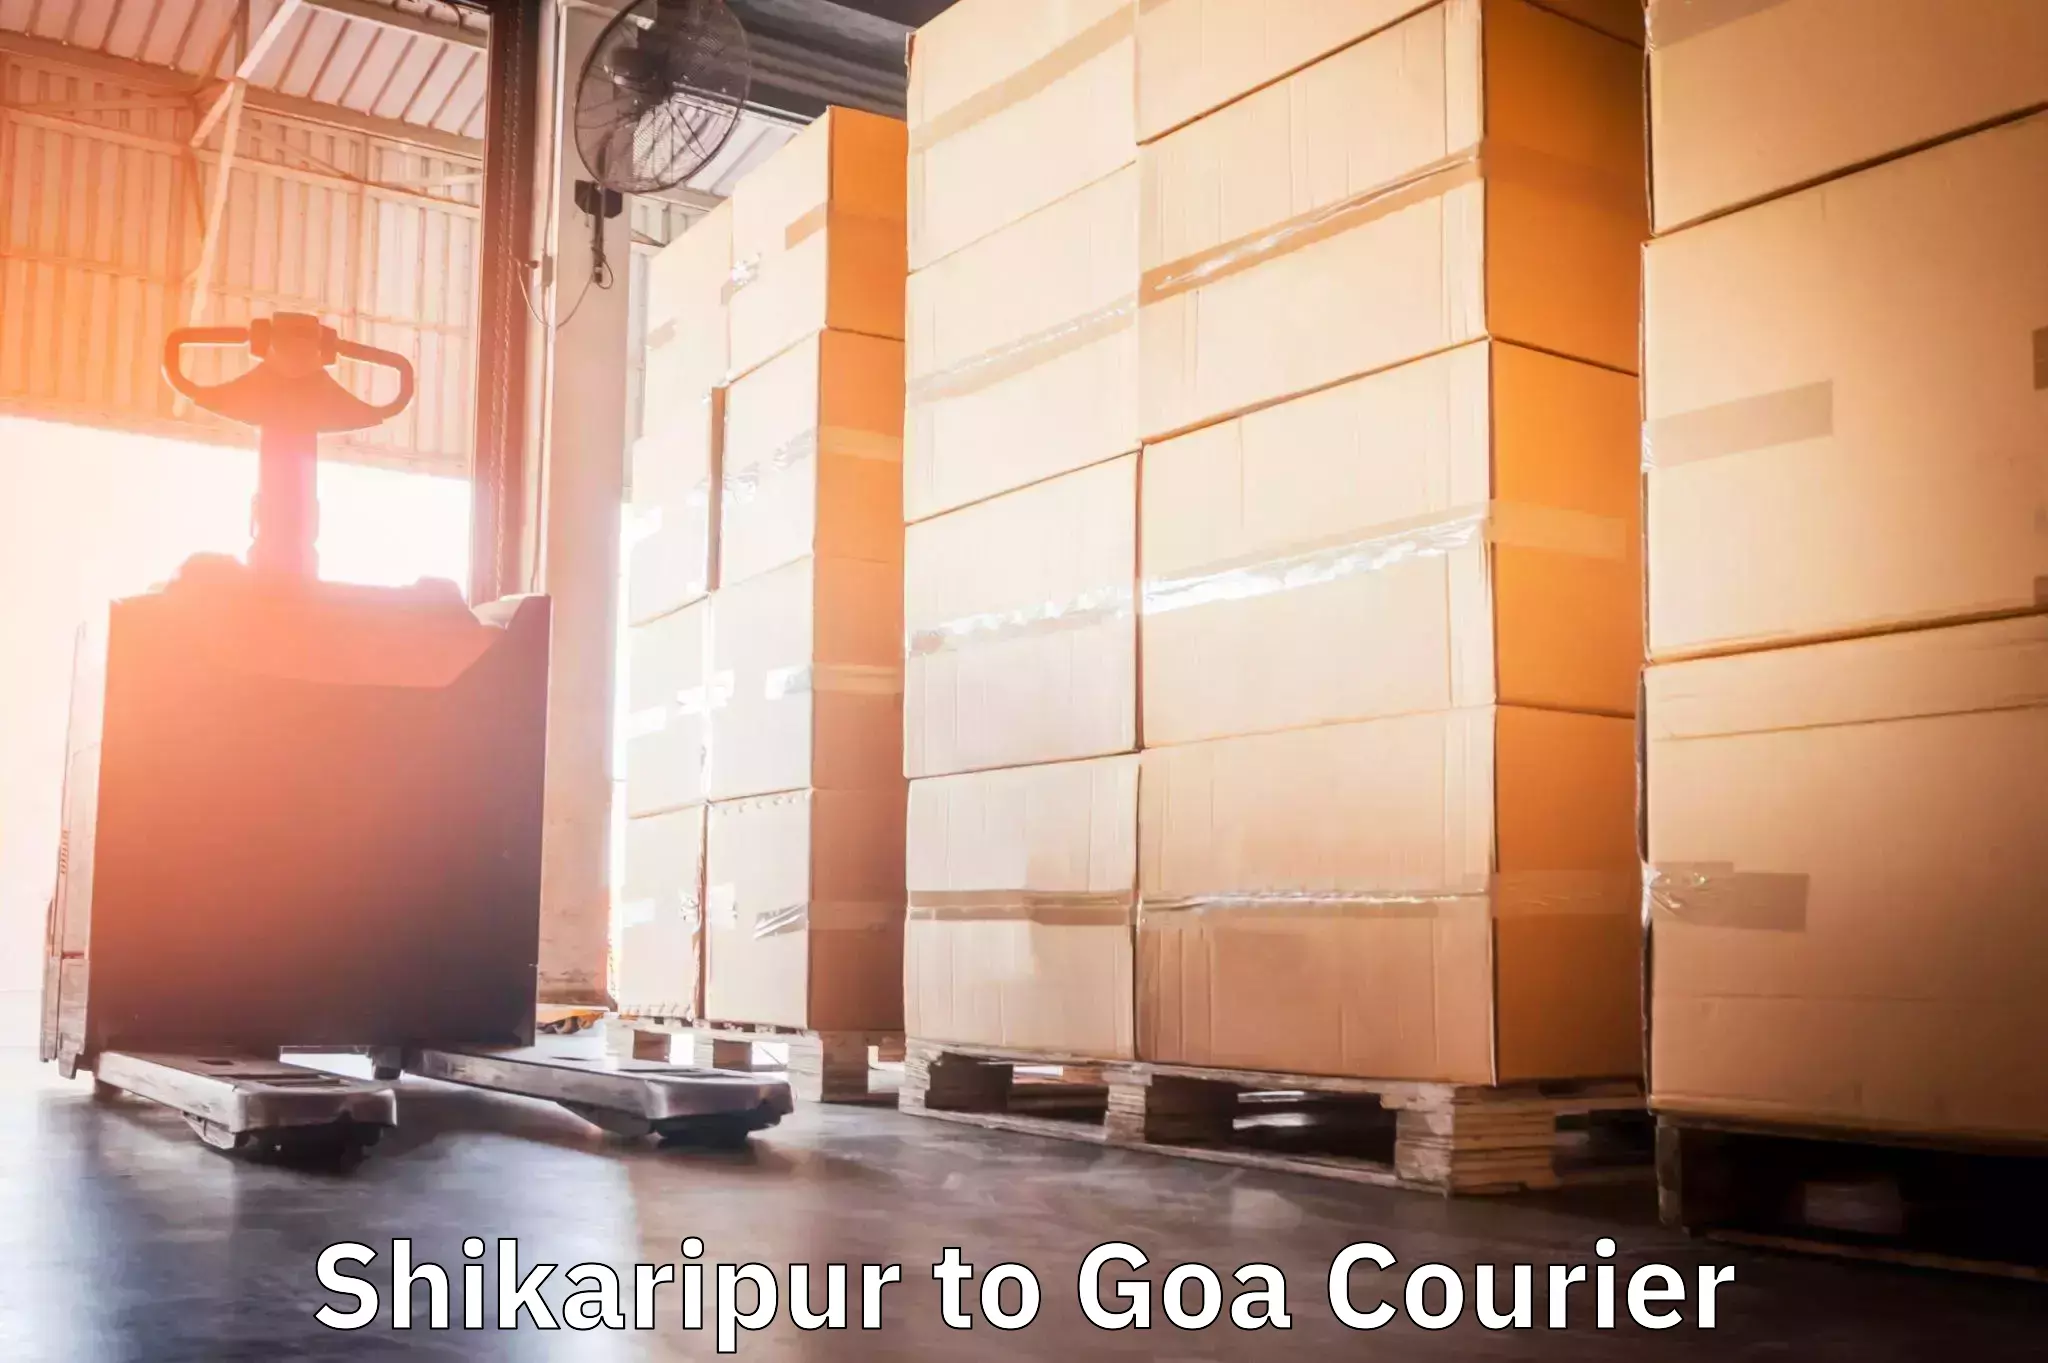 Global shipping networks Shikaripur to Goa